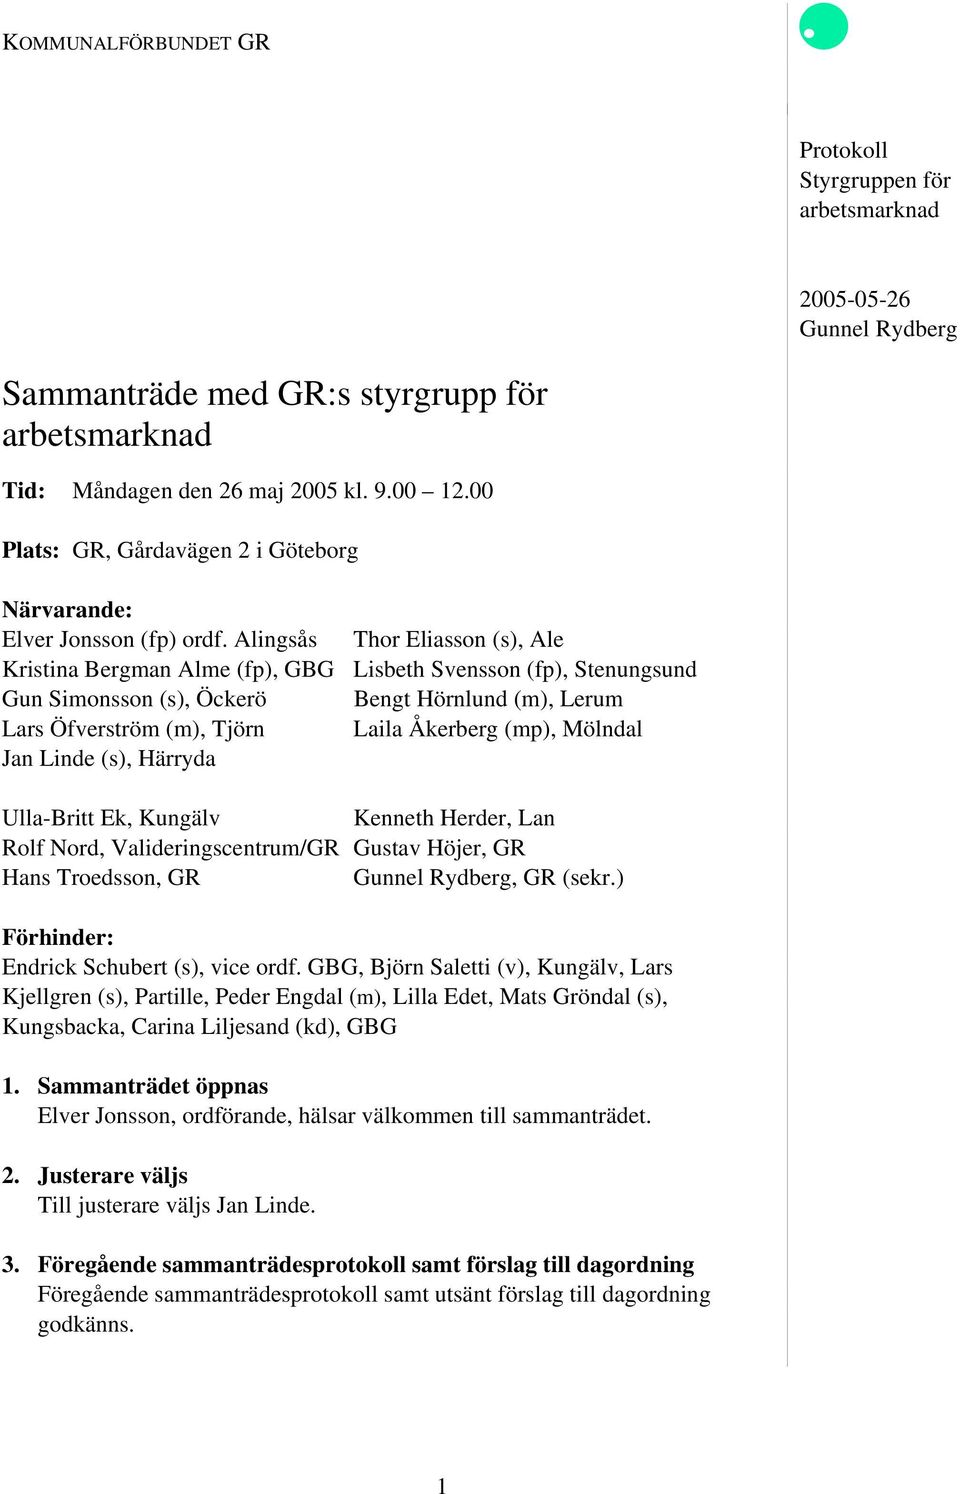 Alingsås Thor Eliasson (s), Ale Kristina Bergman Alme (fp), GBG Lisbeth Svensson (fp), Stenungsund Gun Simonsson (s), Öckerö Bengt Hörnlund (m), Lerum Lars Öfverström (m), Tjörn Laila Åkerberg (mp),